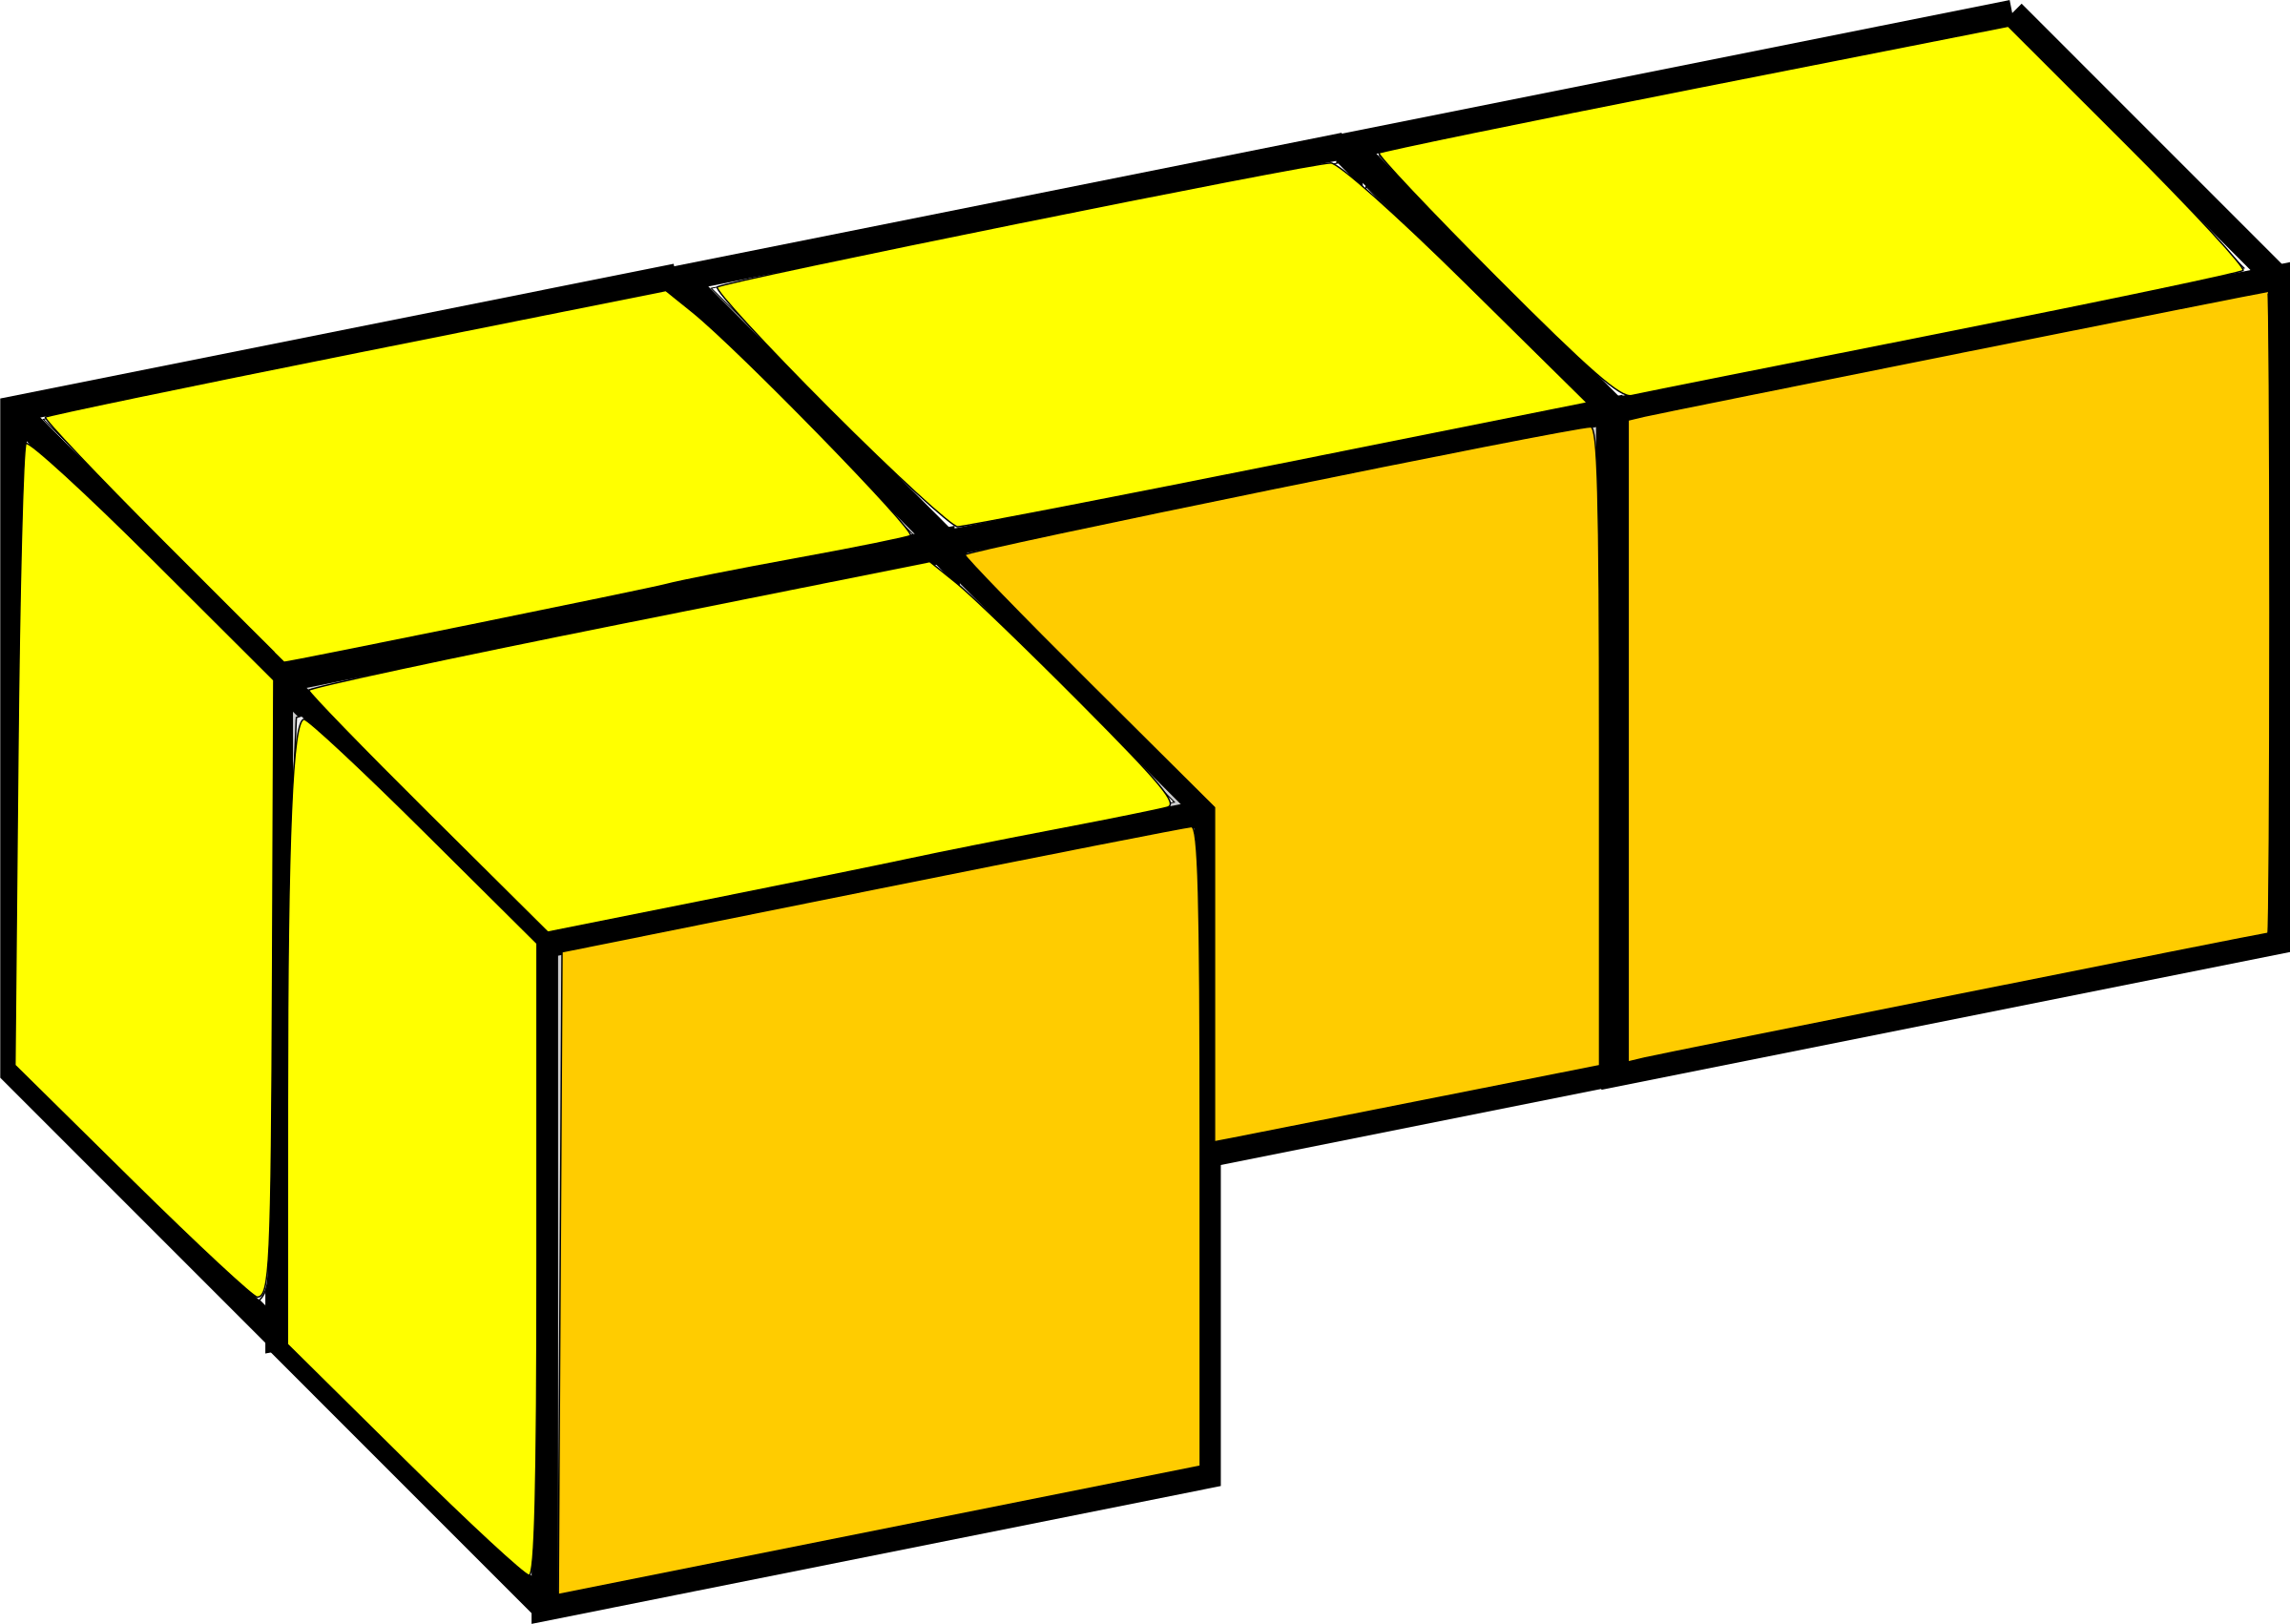 Tetris Game Download Free Image PNG Image